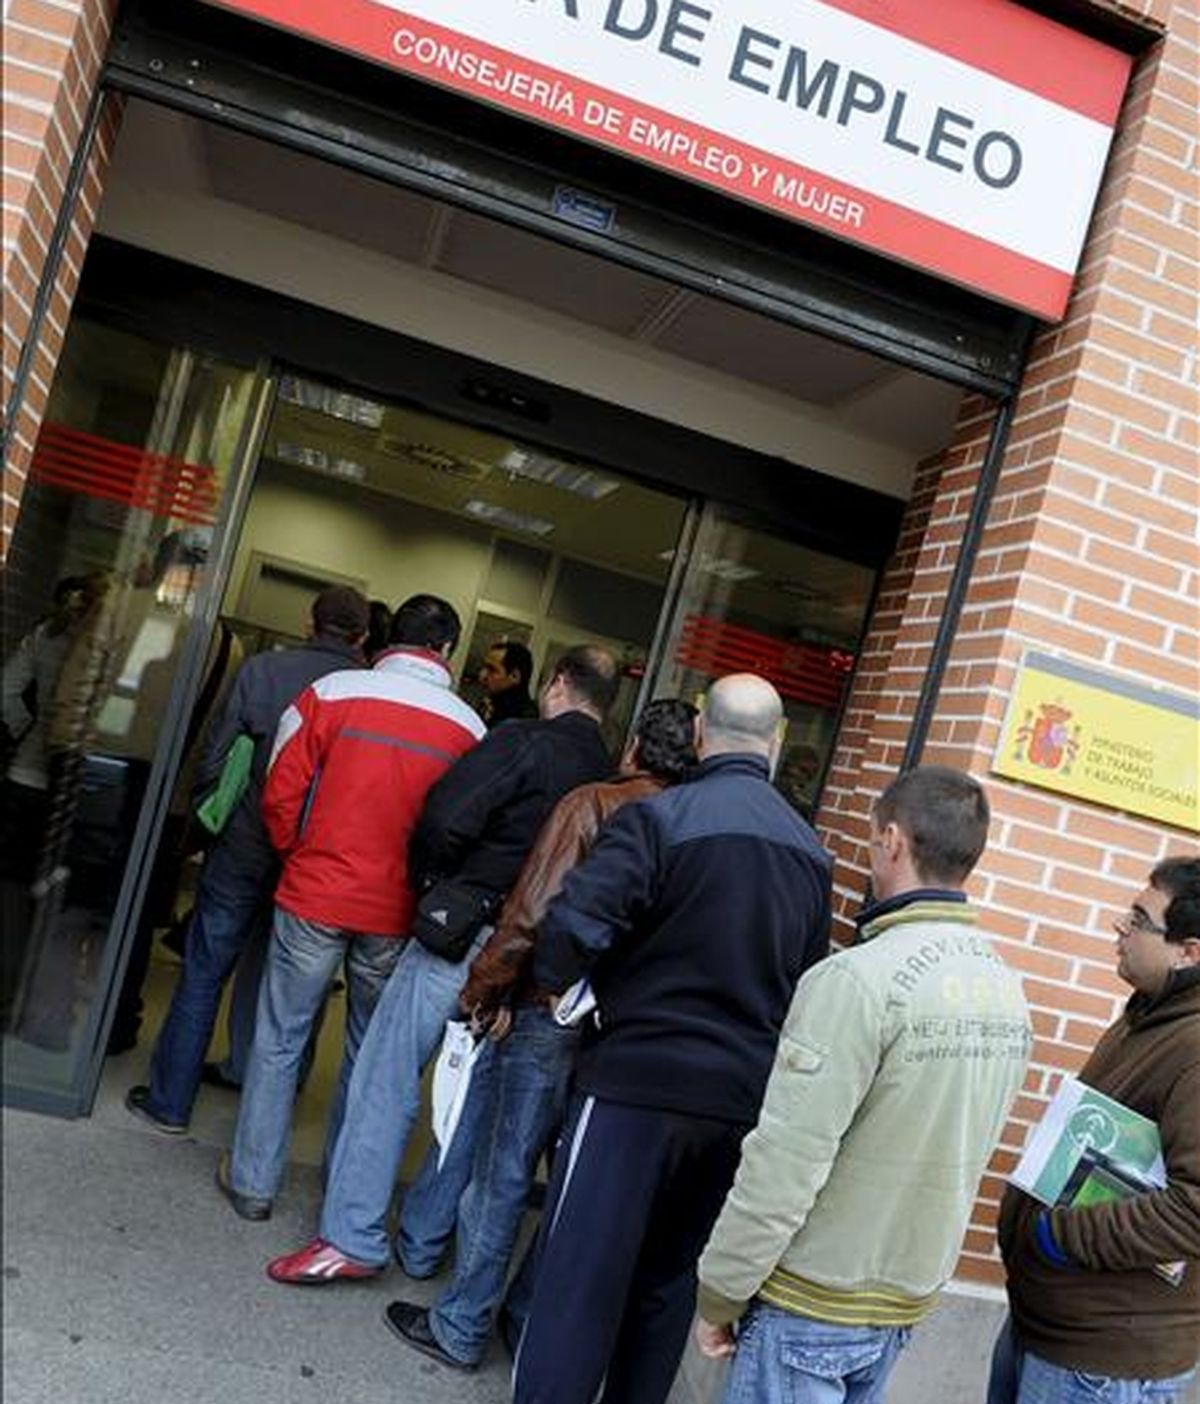 Varias personas hacen cola en una oficina de empleo en Madrid. EFE/Archivo